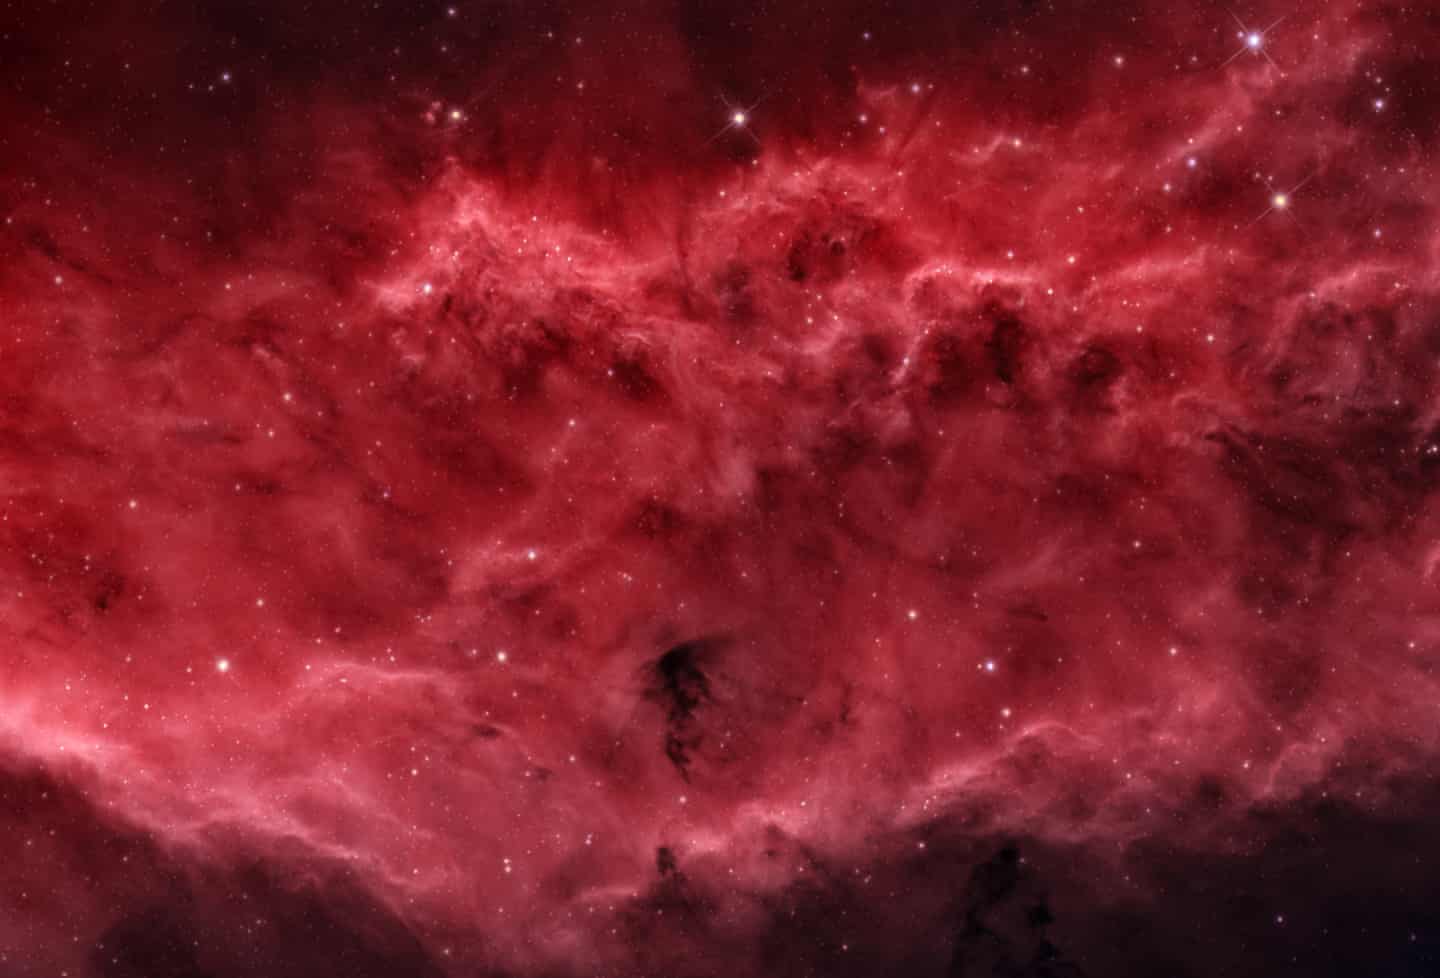 Bức ảnh Những cơn sóng của Bence Toth đoạt giải hạng mục Nhiếp ảnh gia mới xuất sắc nhất. Hình ảnh chụp vùng trung tâm của Tinh vân California (NGC 1499), thể hiện năng lượng rộng lớn không thể kiểm soát của tự nhiên, giống như những con sóng khổng lồ của một cơn bão trong đại dương.